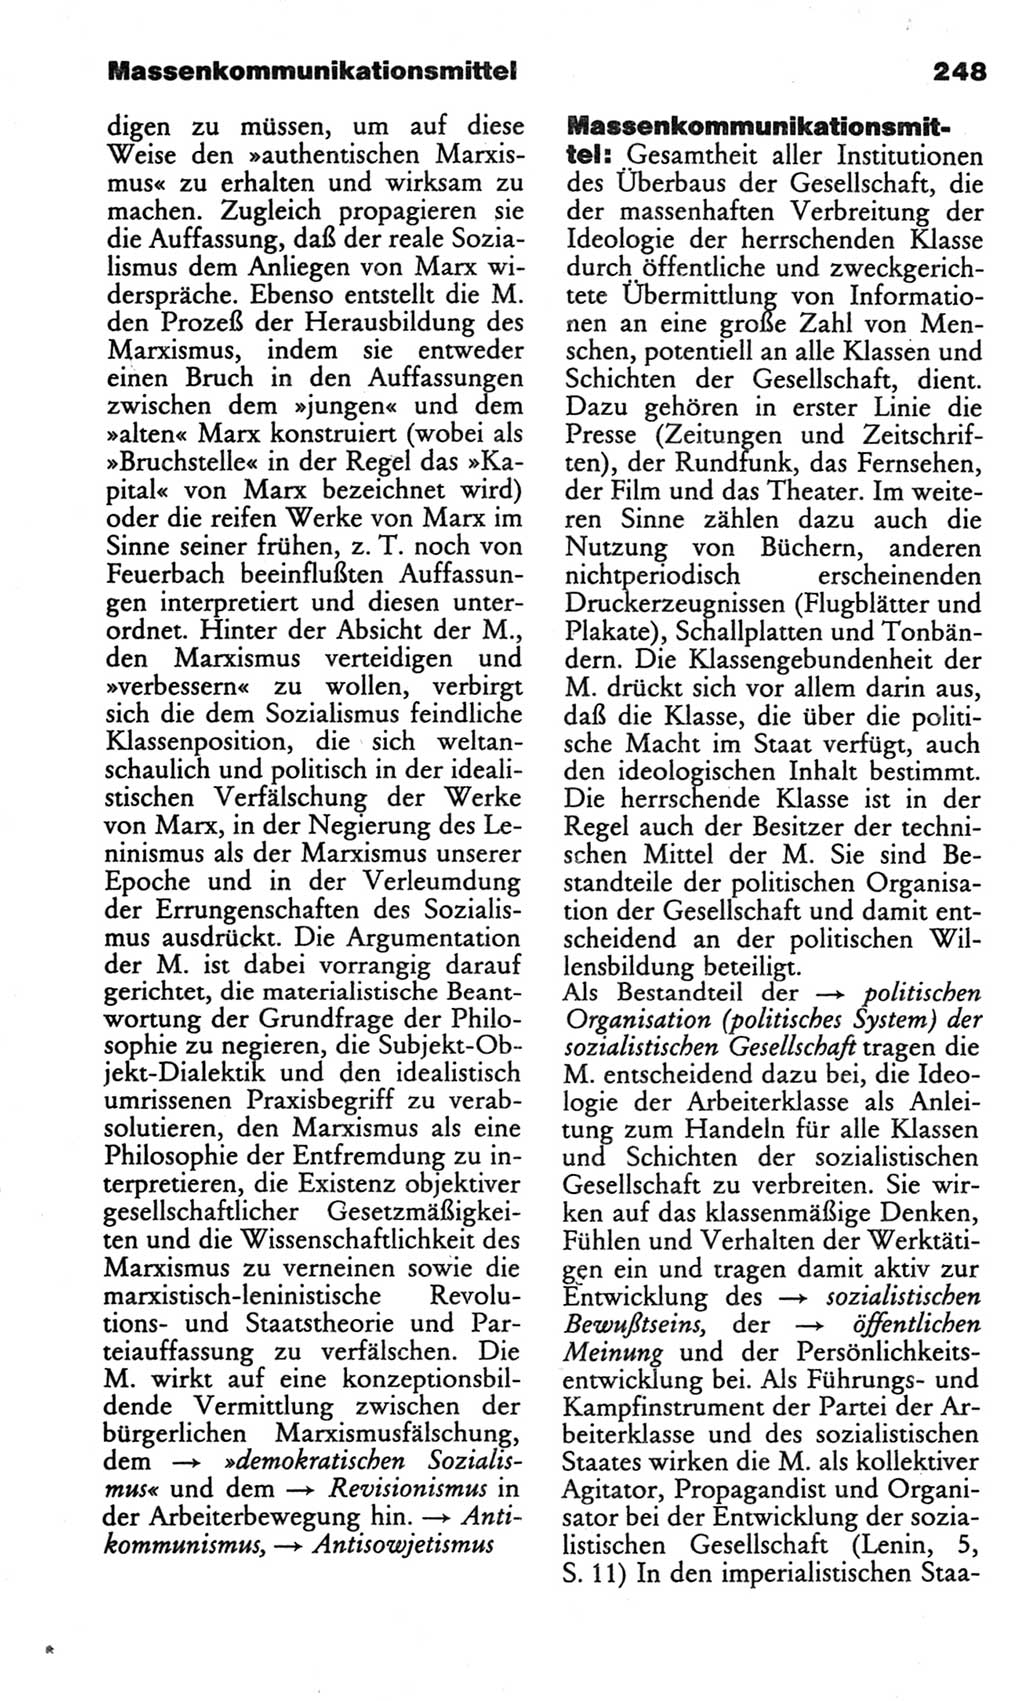 Wörterbuch des wissenschaftlichen Kommunismus [Deutsche Demokratische Republik (DDR)] 1982, Seite 248 (Wb. wiss. Komm. DDR 1982, S. 248)